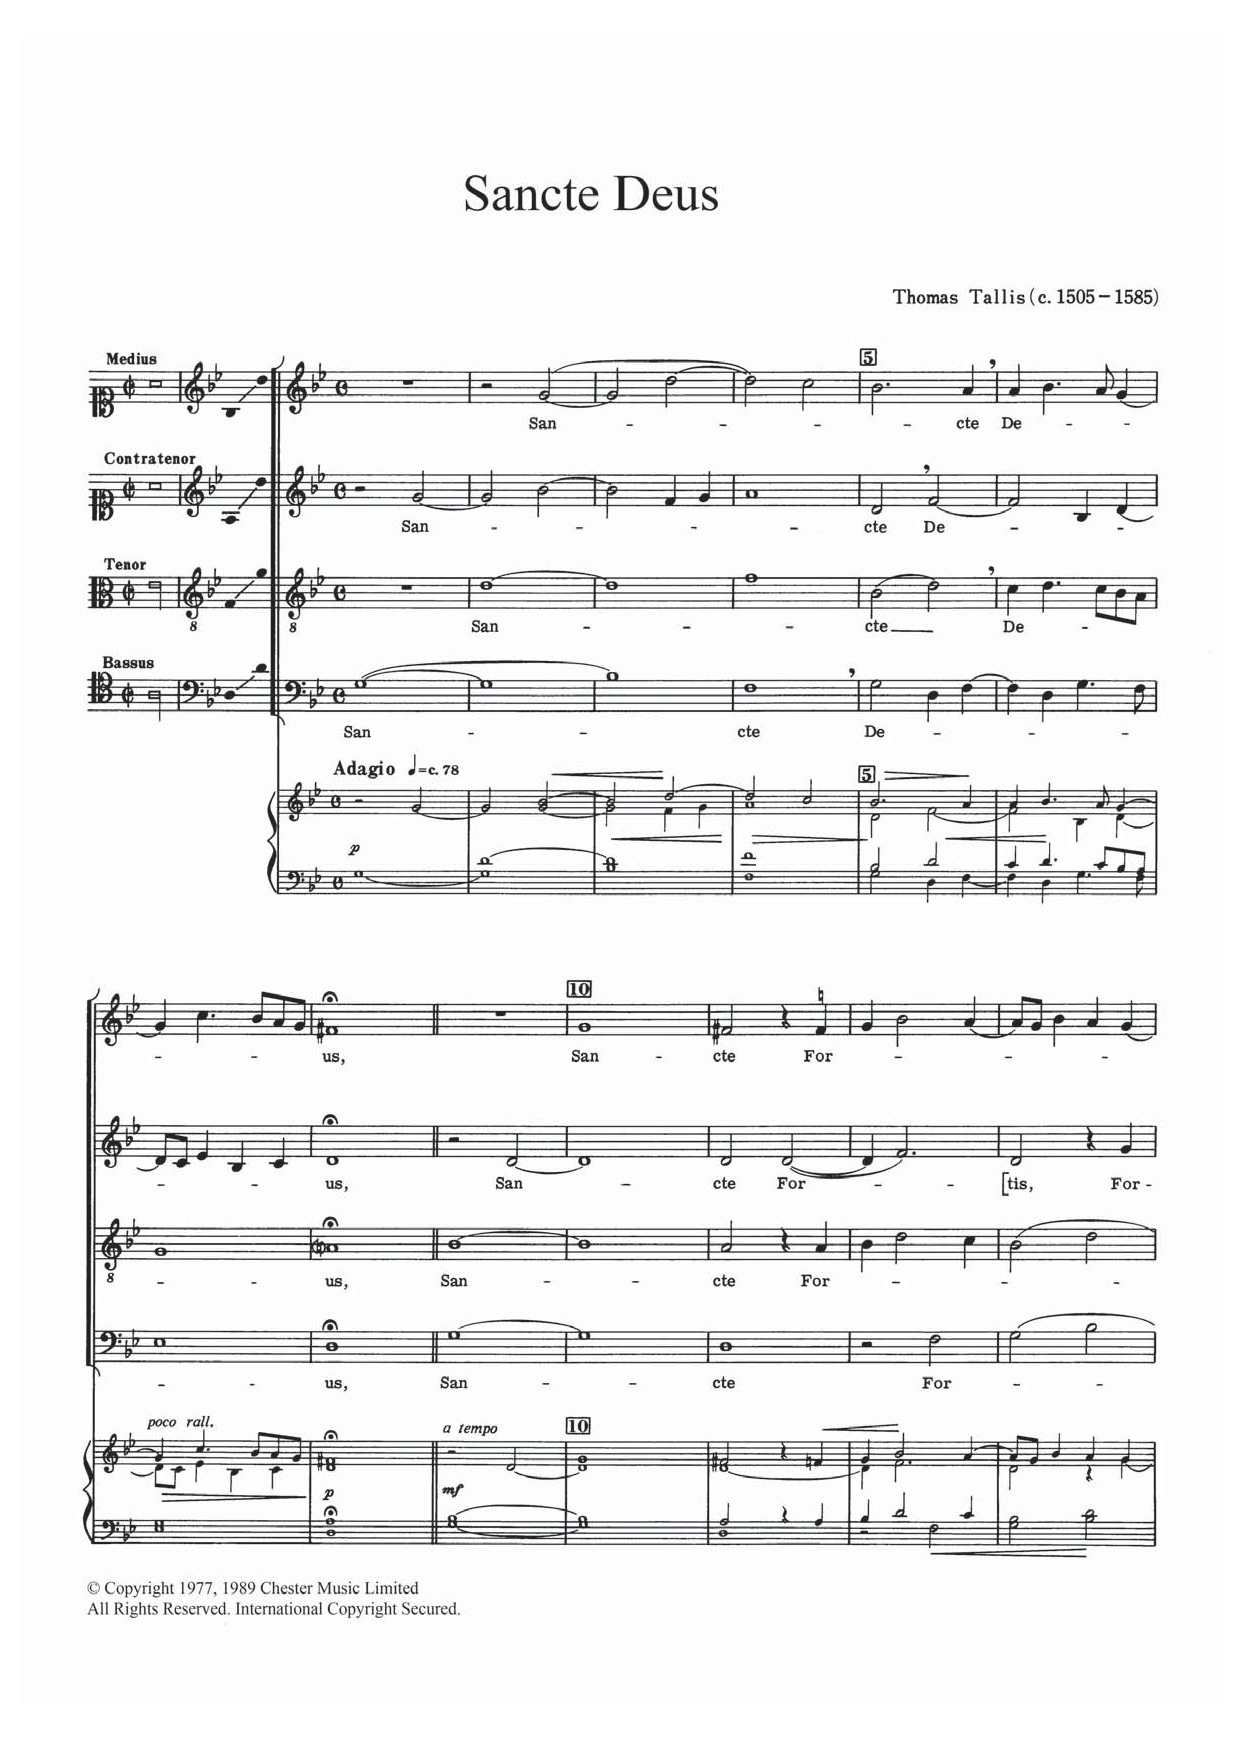 Thomas Tallis Sancte Deus Sheet Music Notes & Chords for SATB - Download or Print PDF